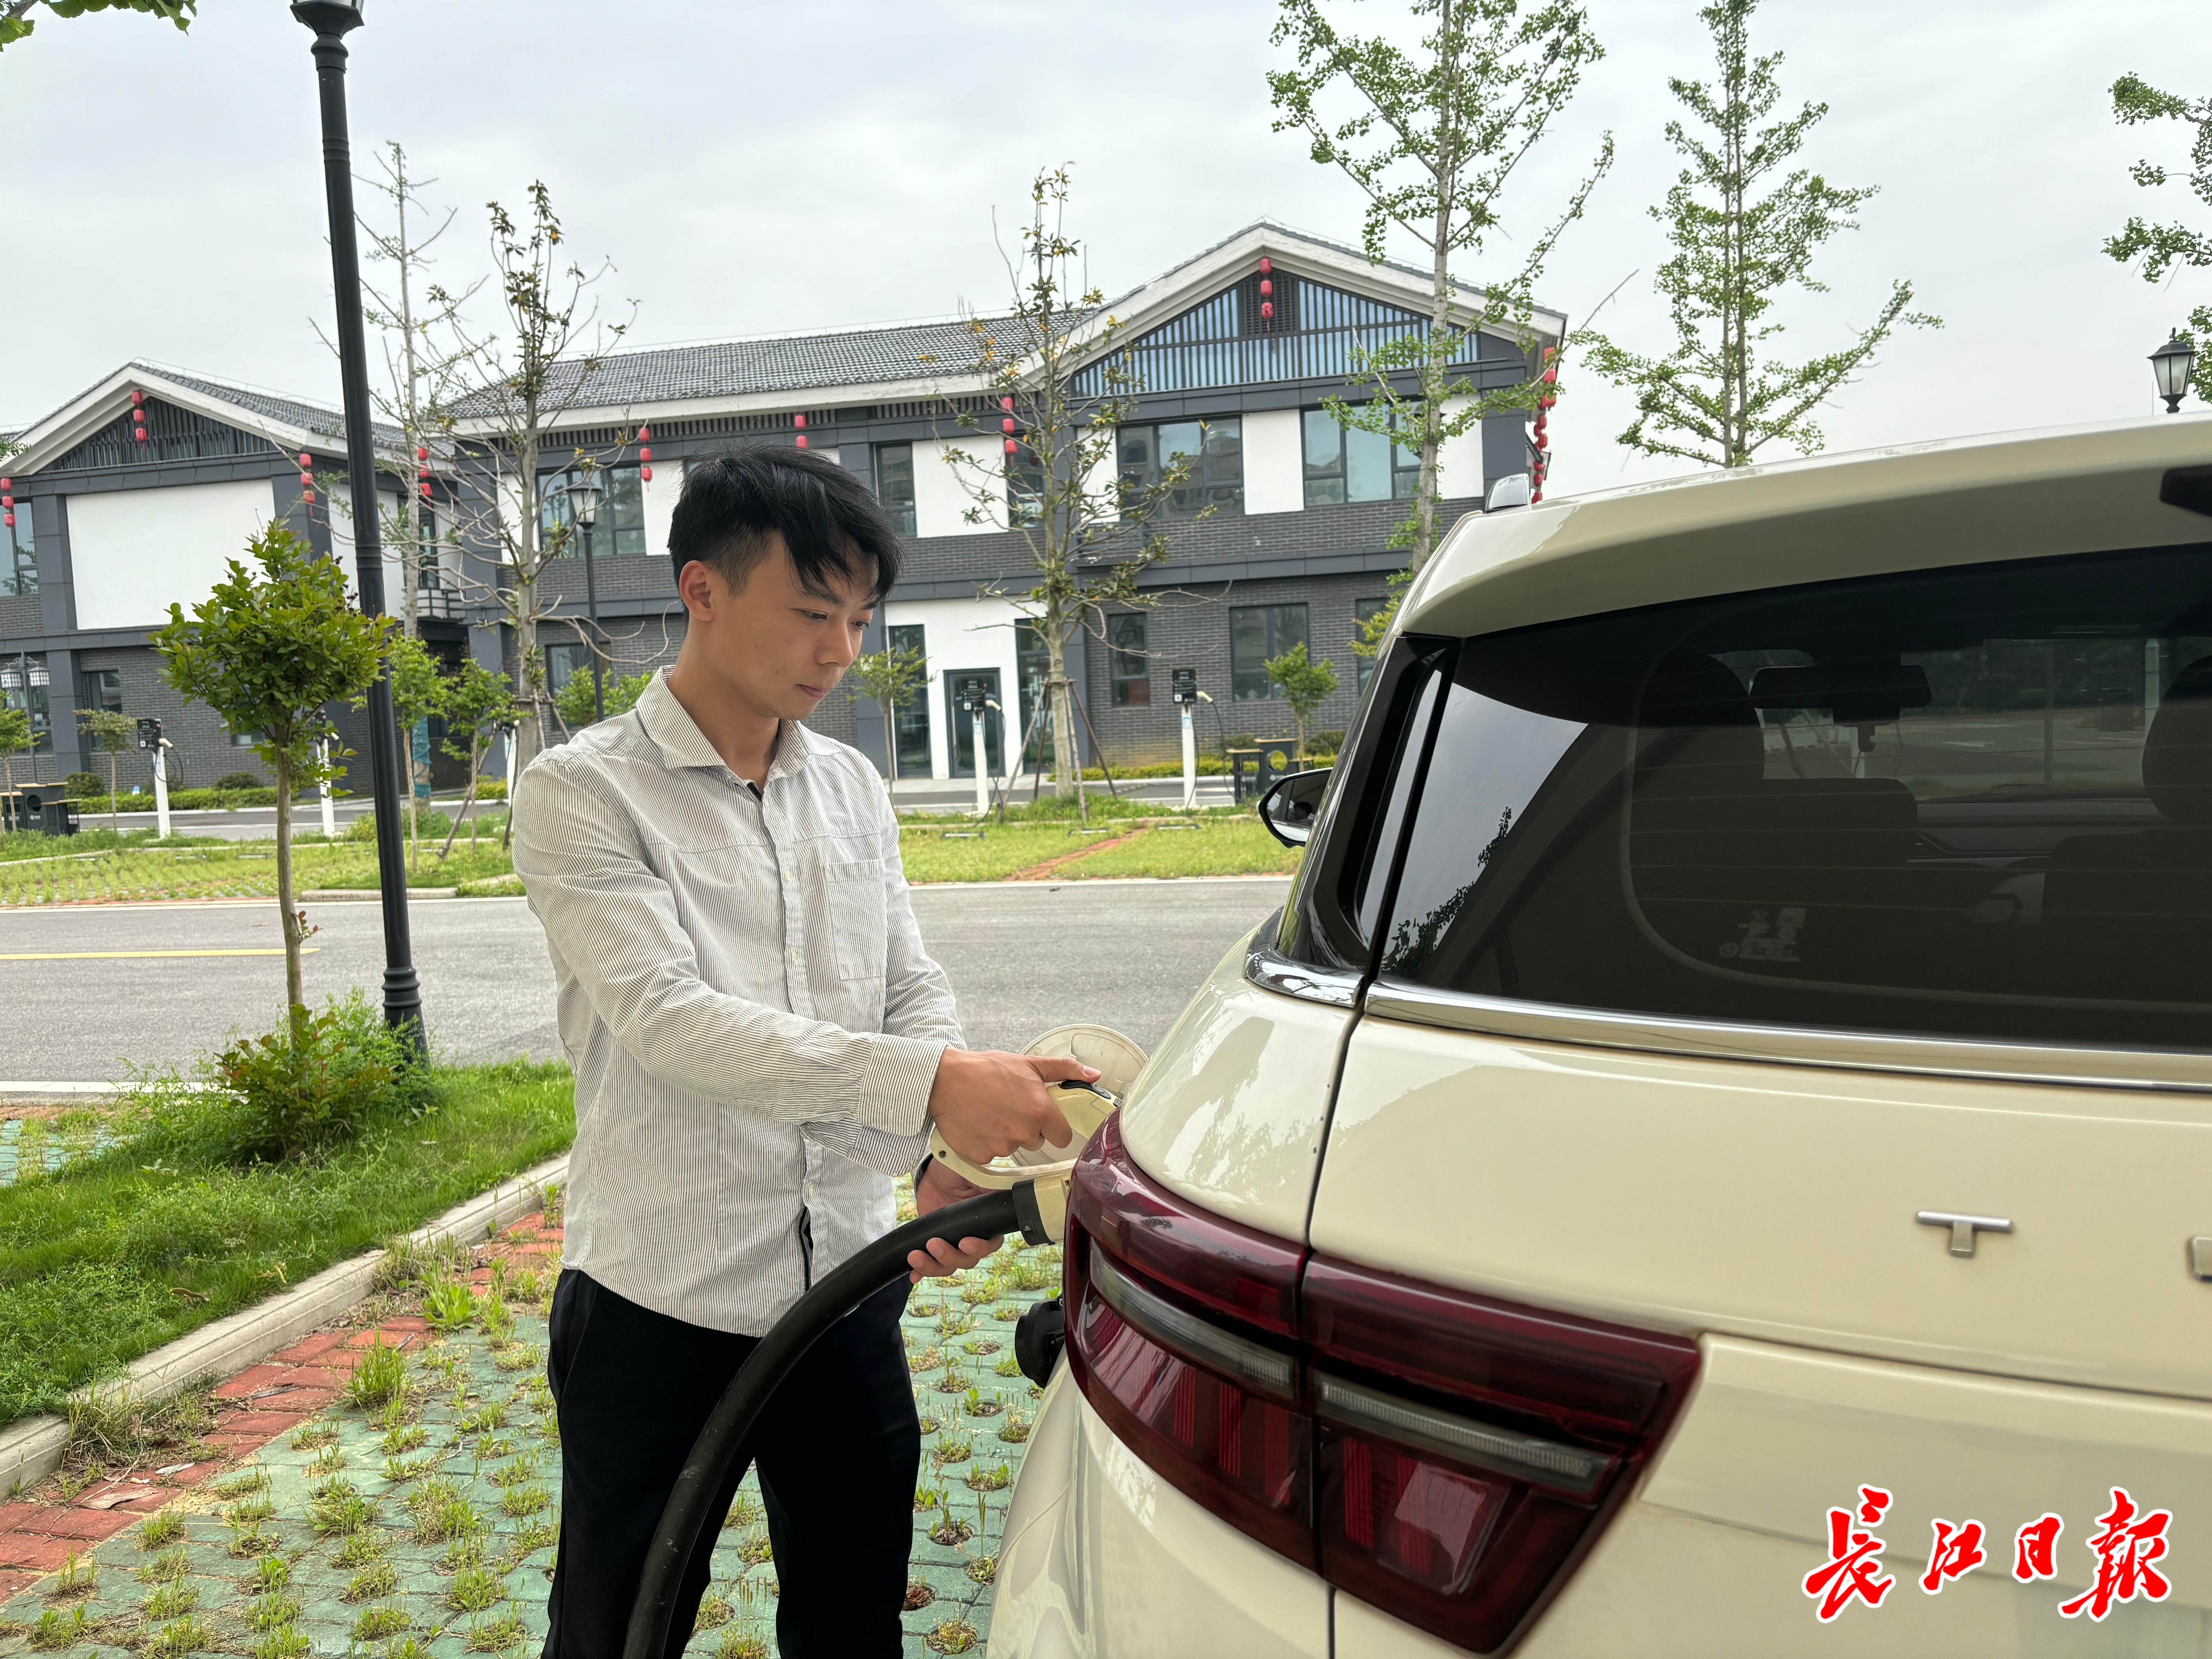 开着“绿牌”车在汉乡村游，会有“里程焦虑”吗？记者亲测